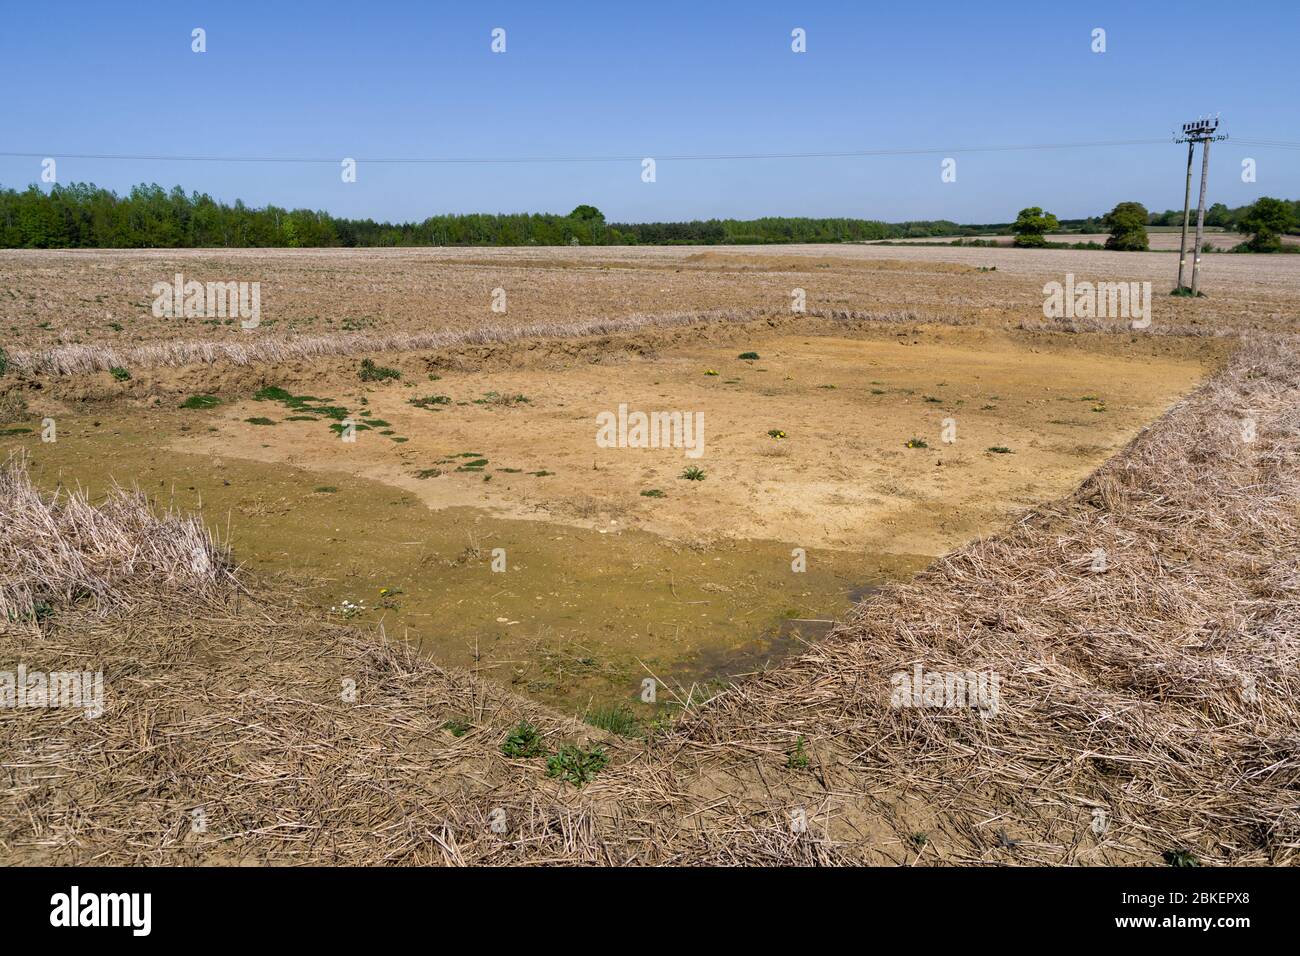 Brownfield-Site mit länglichen Ausgrabungen für archäologische Ausgrabungen vor dem Hausbau, Wootton, Northampton, Großbritannien Stockfoto